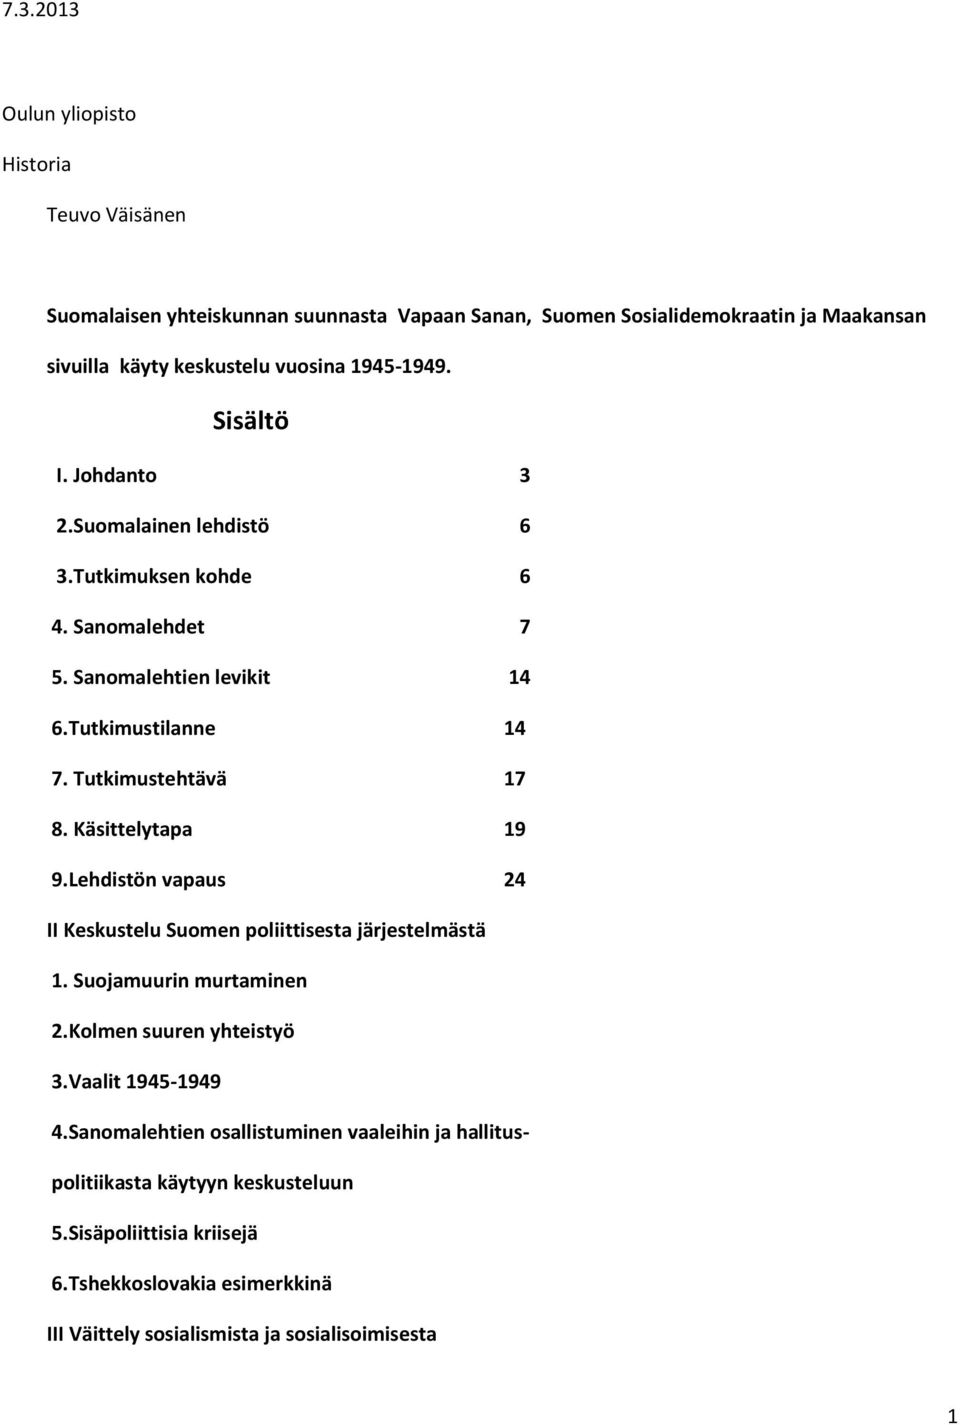 Käsittelytapa 19 9.Lehdistön vapaus 24 II Keskustelu Suomen poliittisesta järjestelmästä 1. Suojamuurin murtaminen 2.Kolmen suuren yhteistyö 3.Vaalit 1945-1949 4.